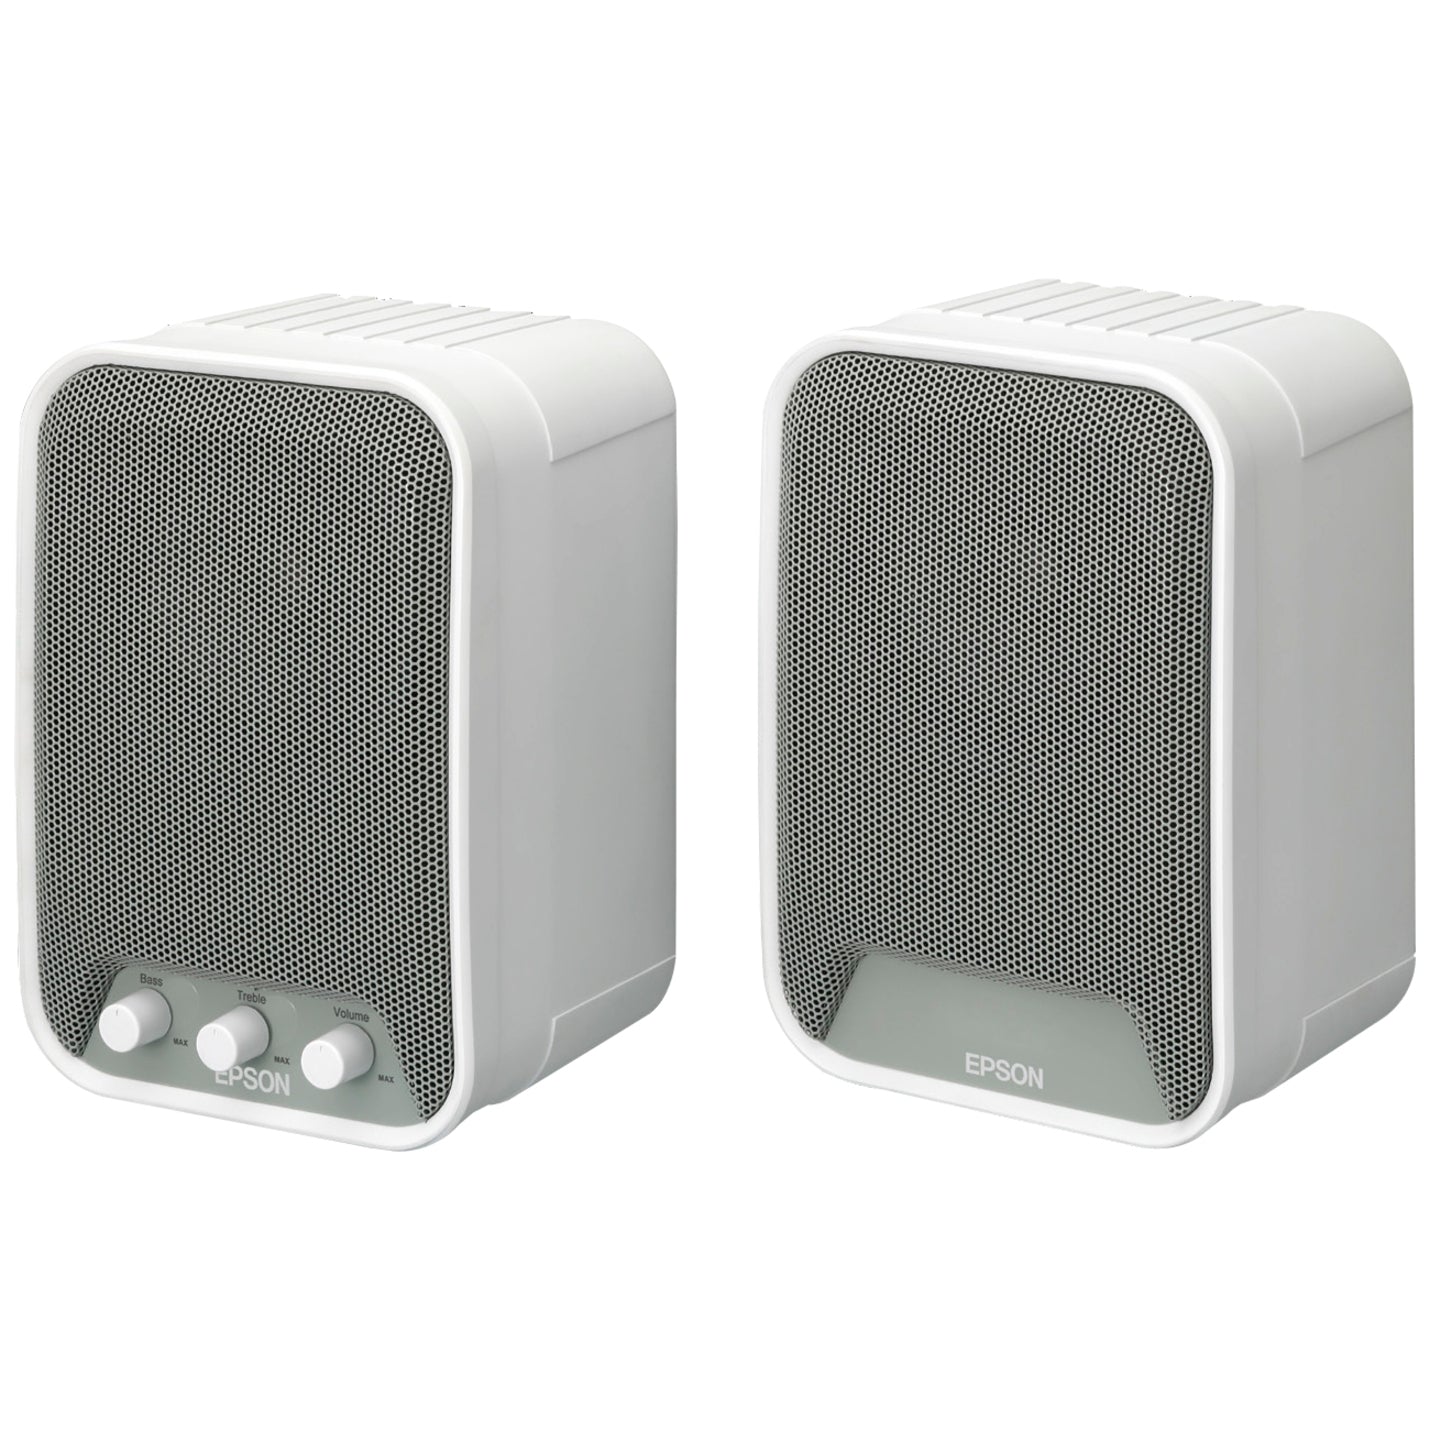 Epson V12H467020 ELPSP02 Speaker System, 30W RMS, White